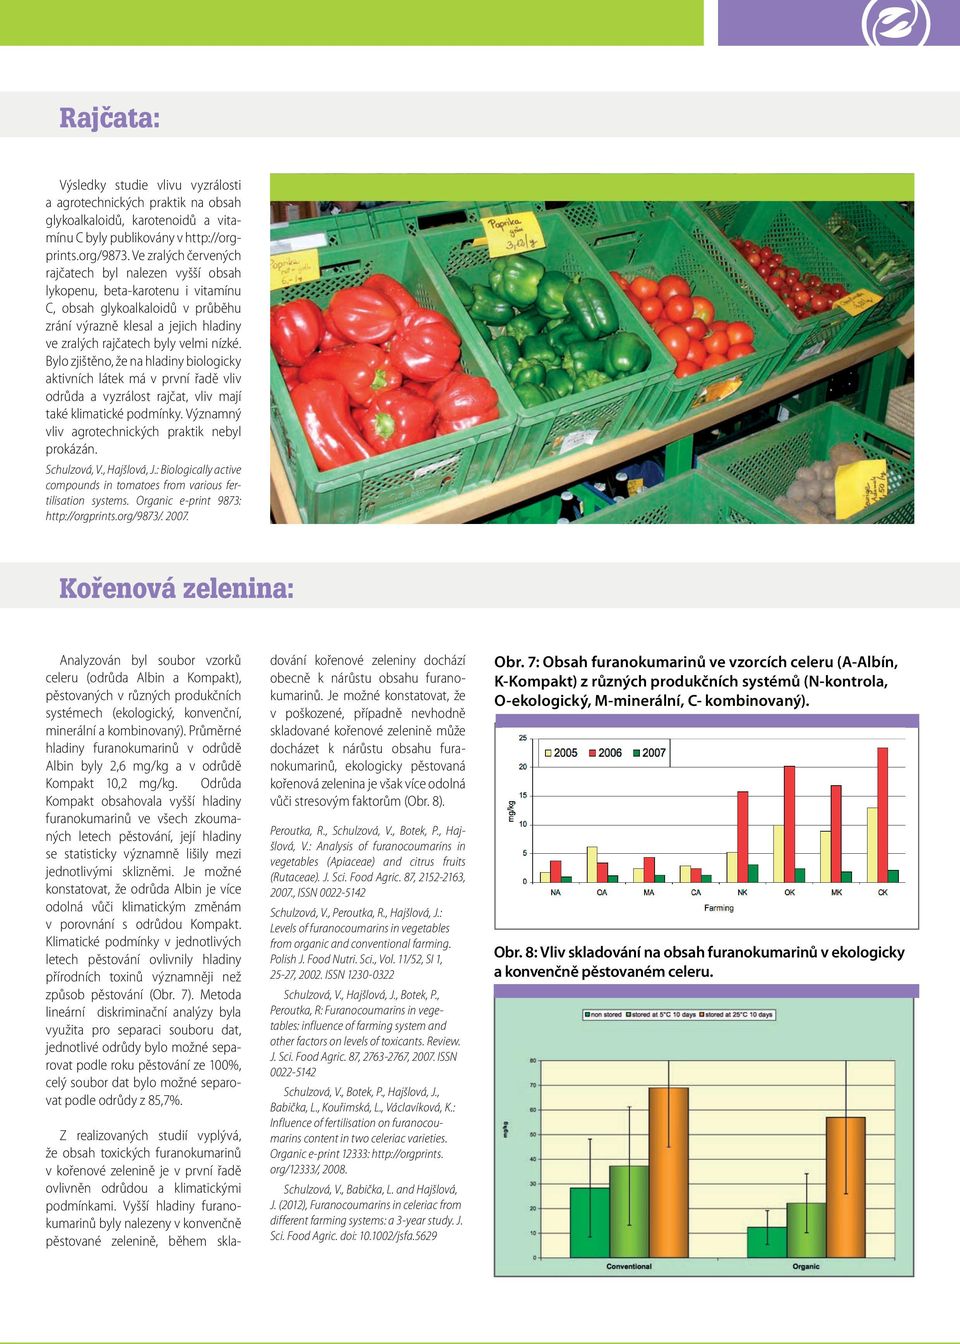 Bylo zjištěno, že na hladiny biologicky aktivních látek má v první řadě vliv odrůda a vyzrálost rajčat, vliv mají také klimatické podmínky. Významný vliv agrotechnických praktik nebyl prokázán.